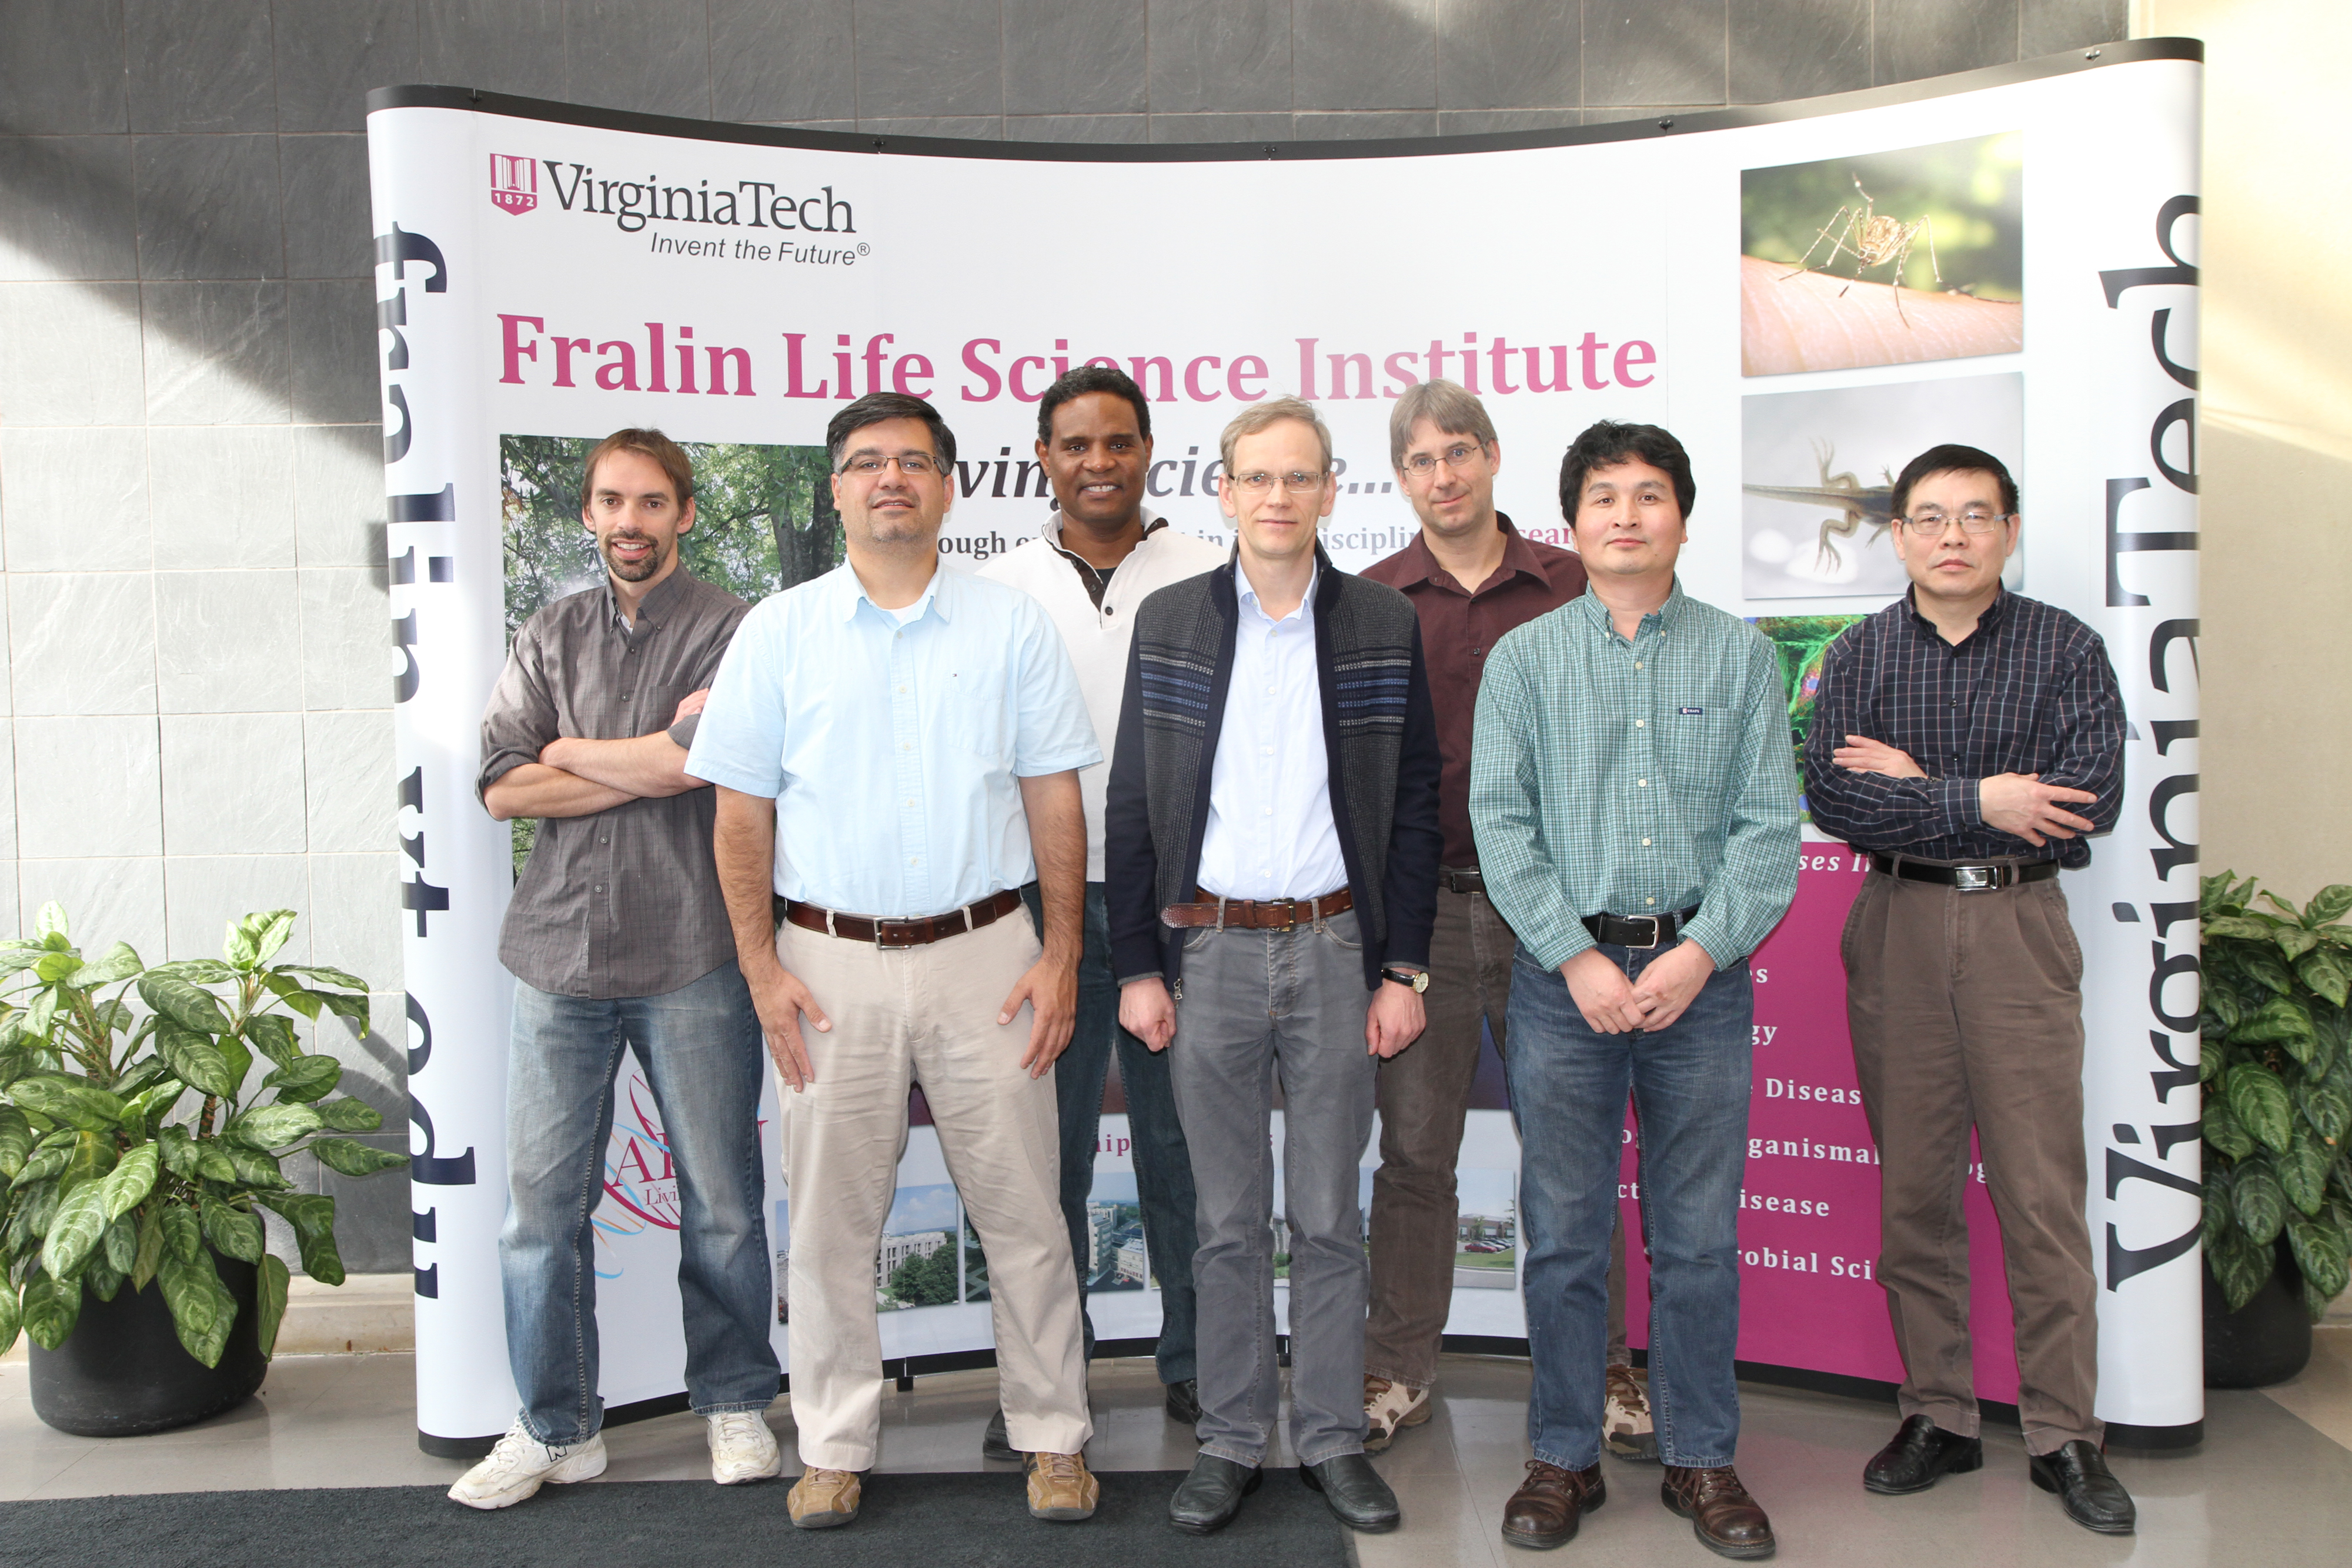 Fralin vector-borne disease researchers